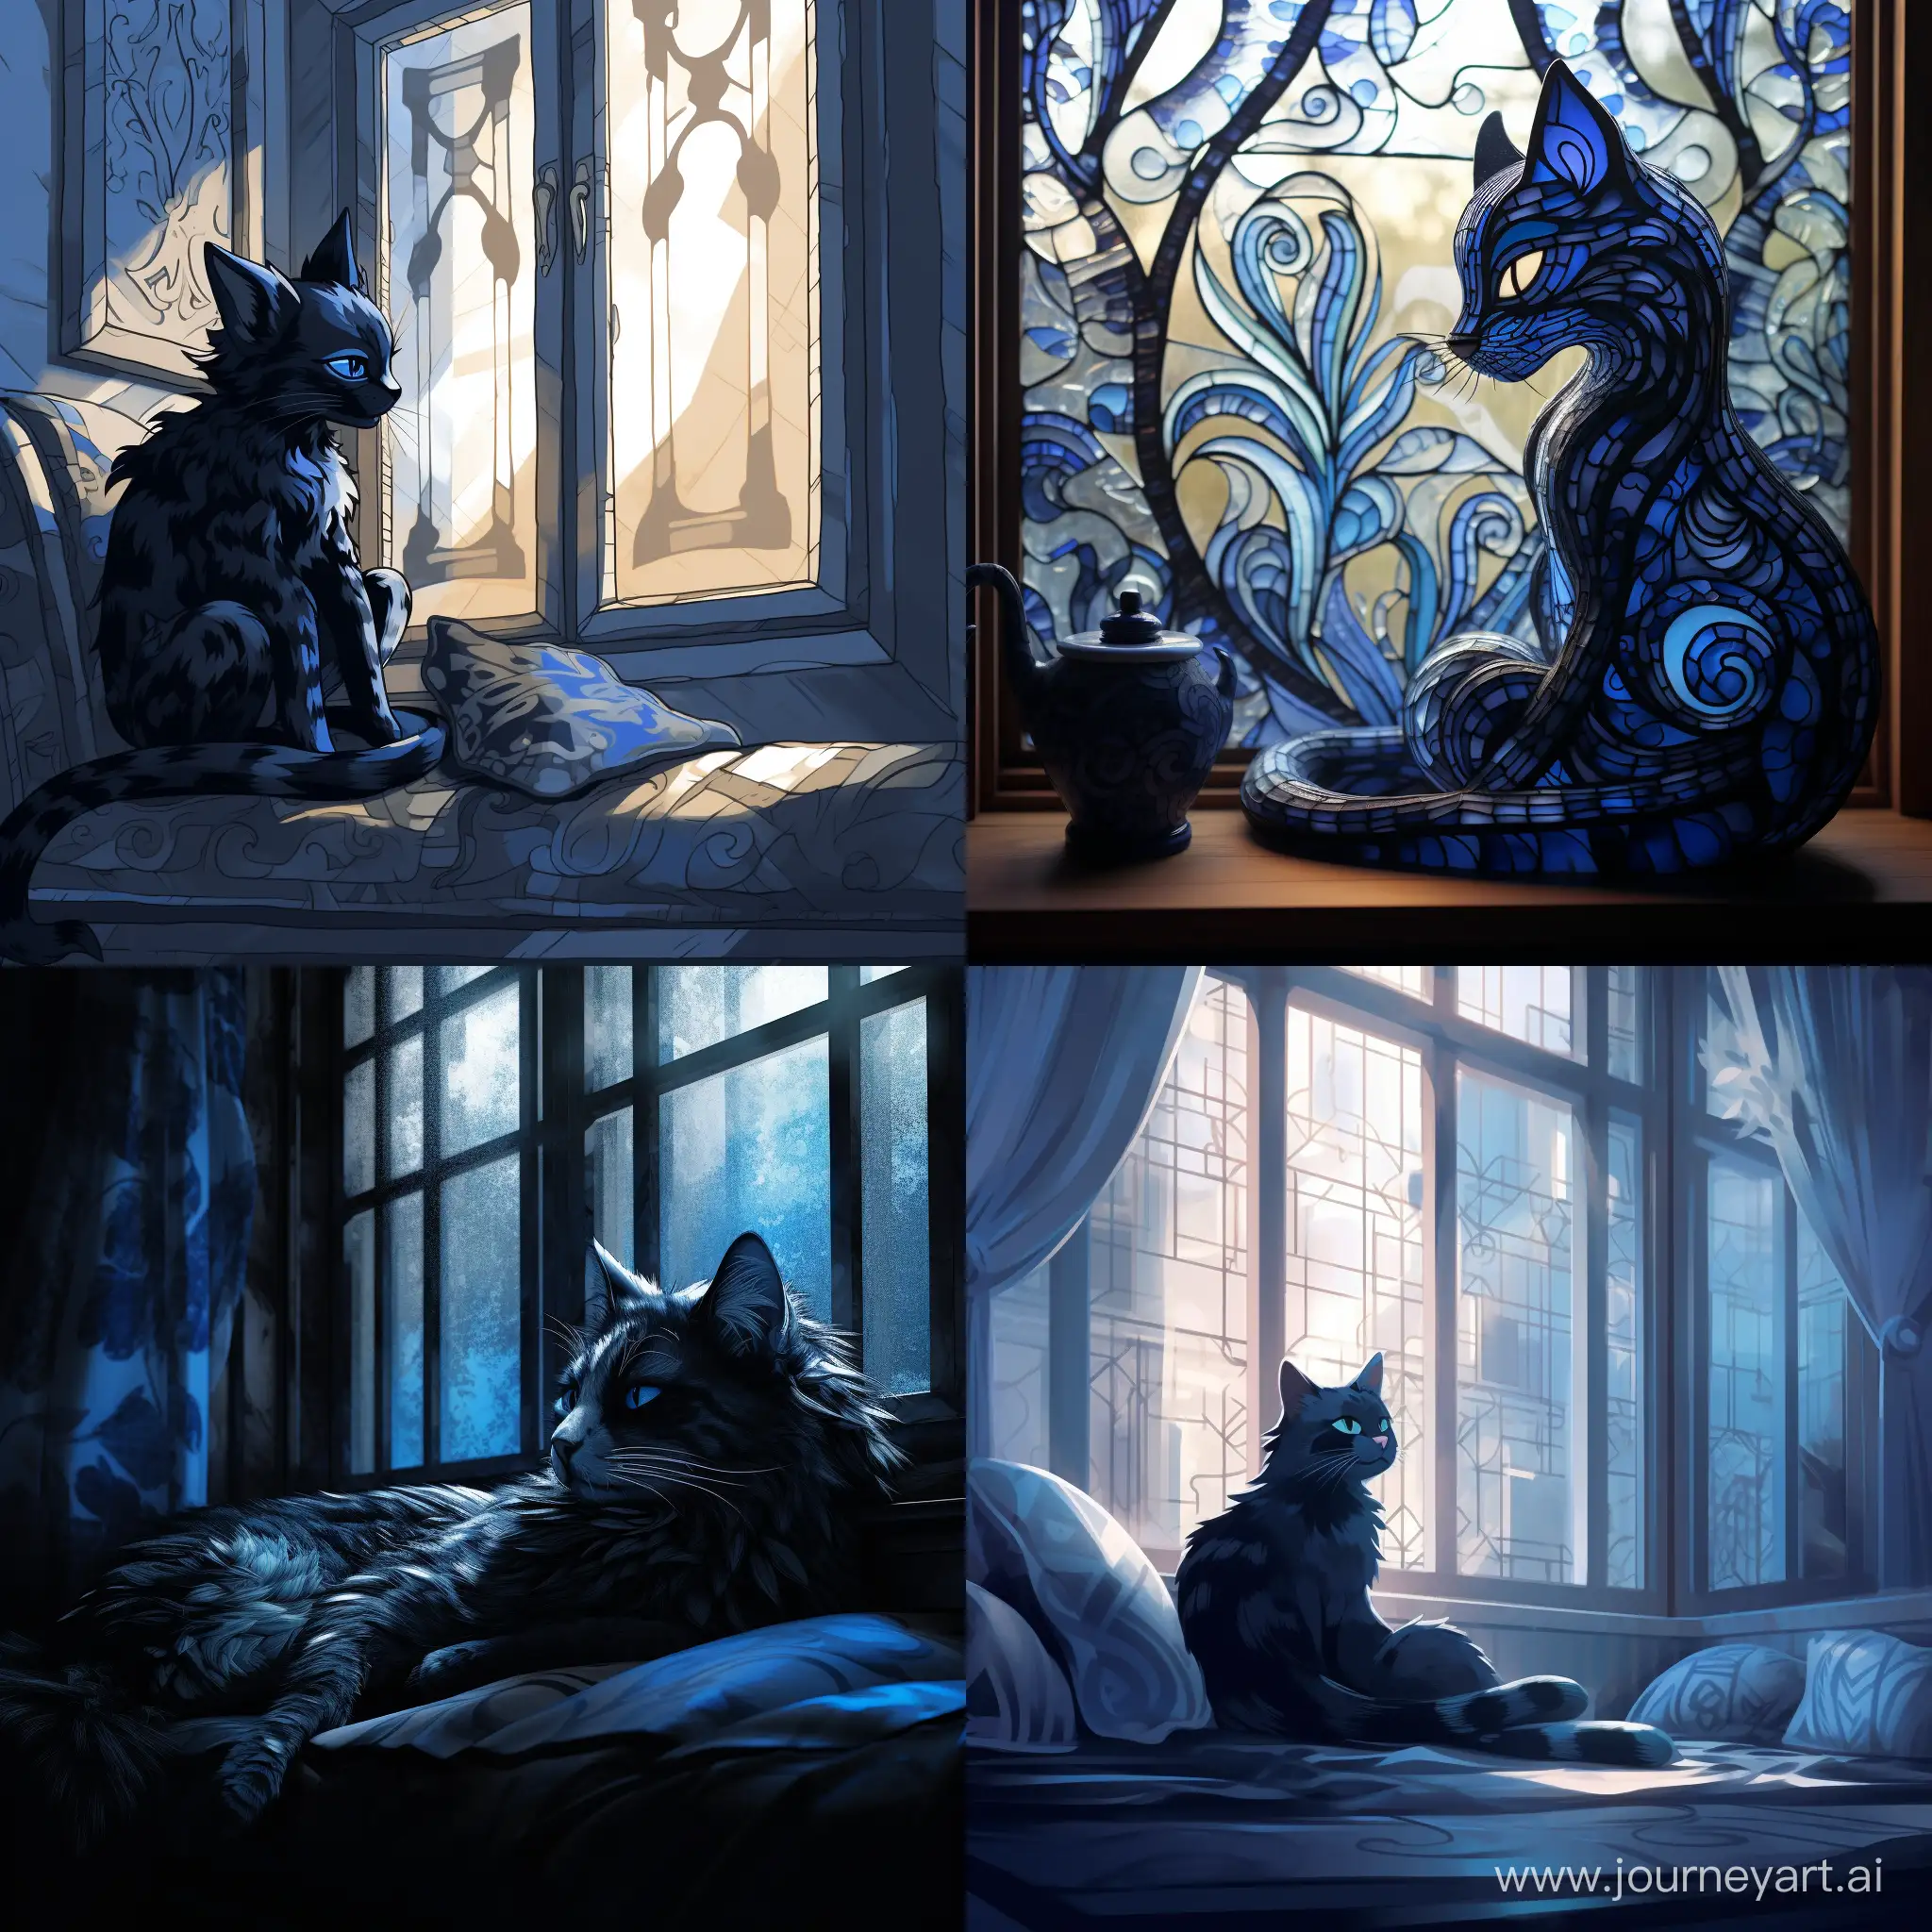 Logo, голубая кошка с черными узорами лениво разлеглась на фоне окна, мягкий свет проникает через окна отбрасывая блики на кошку